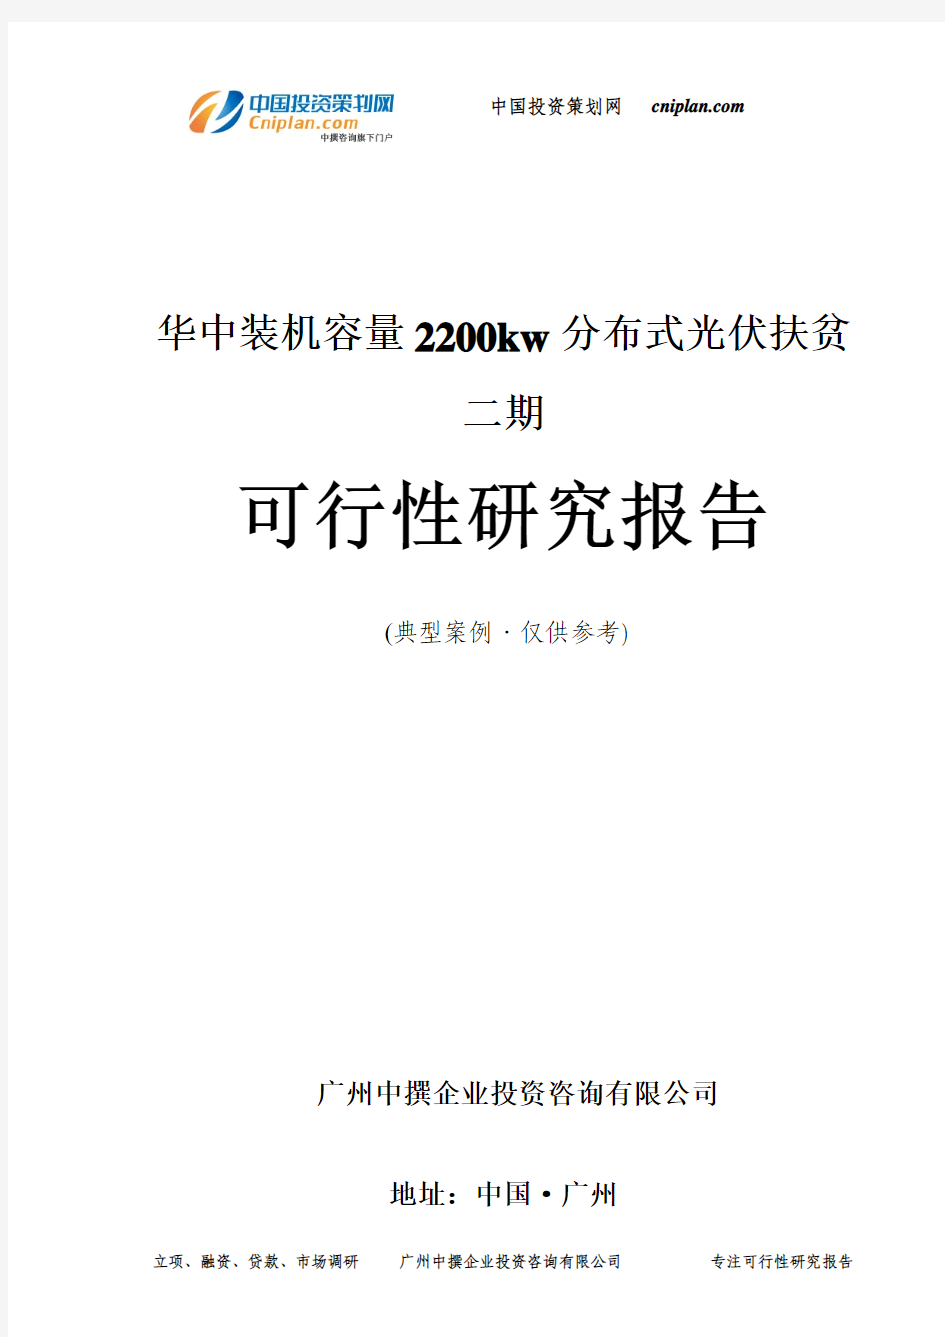 装机容量2200kw分布式光伏扶贫二期可行性研究报告-广州中撰咨询